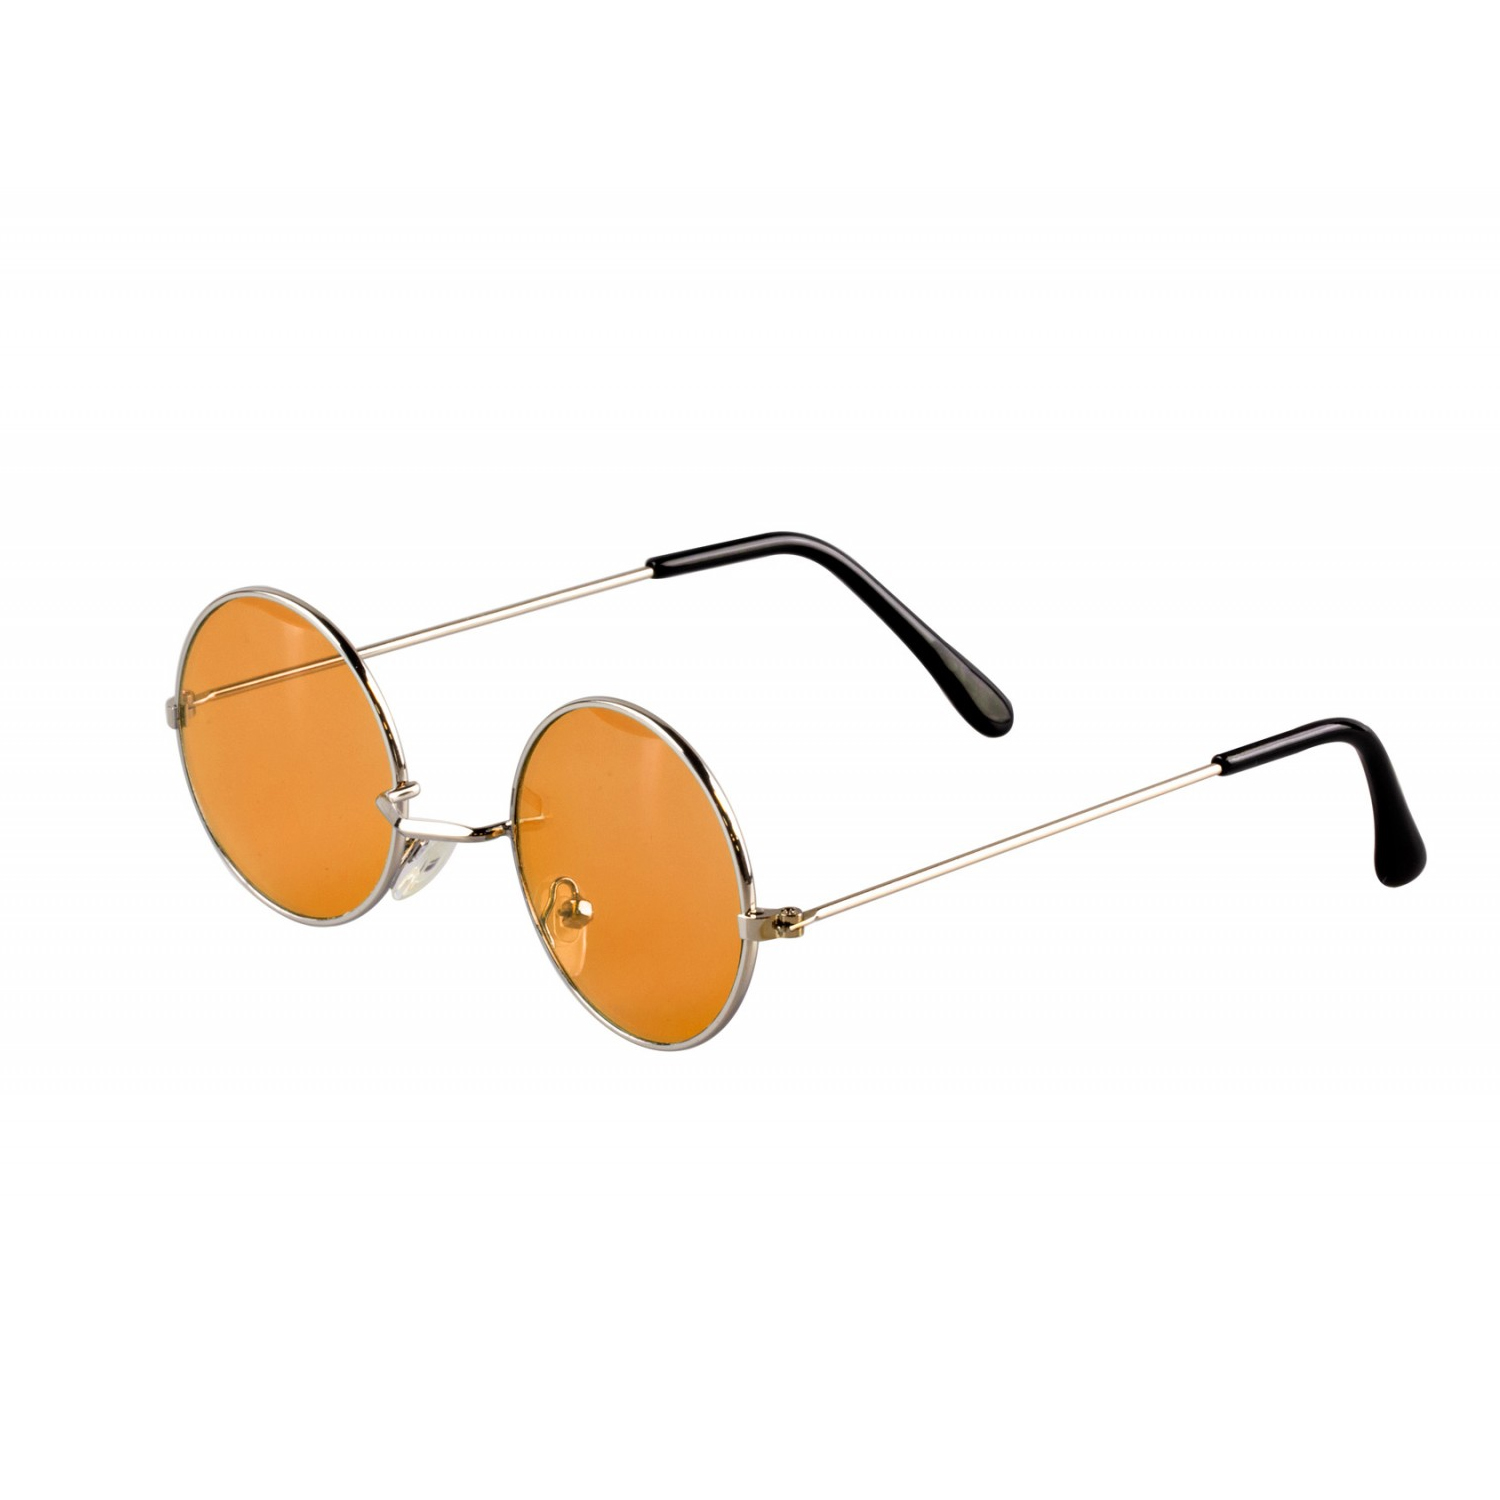 Brille Hippie, runde, orange Gläser aus Metall - Orange